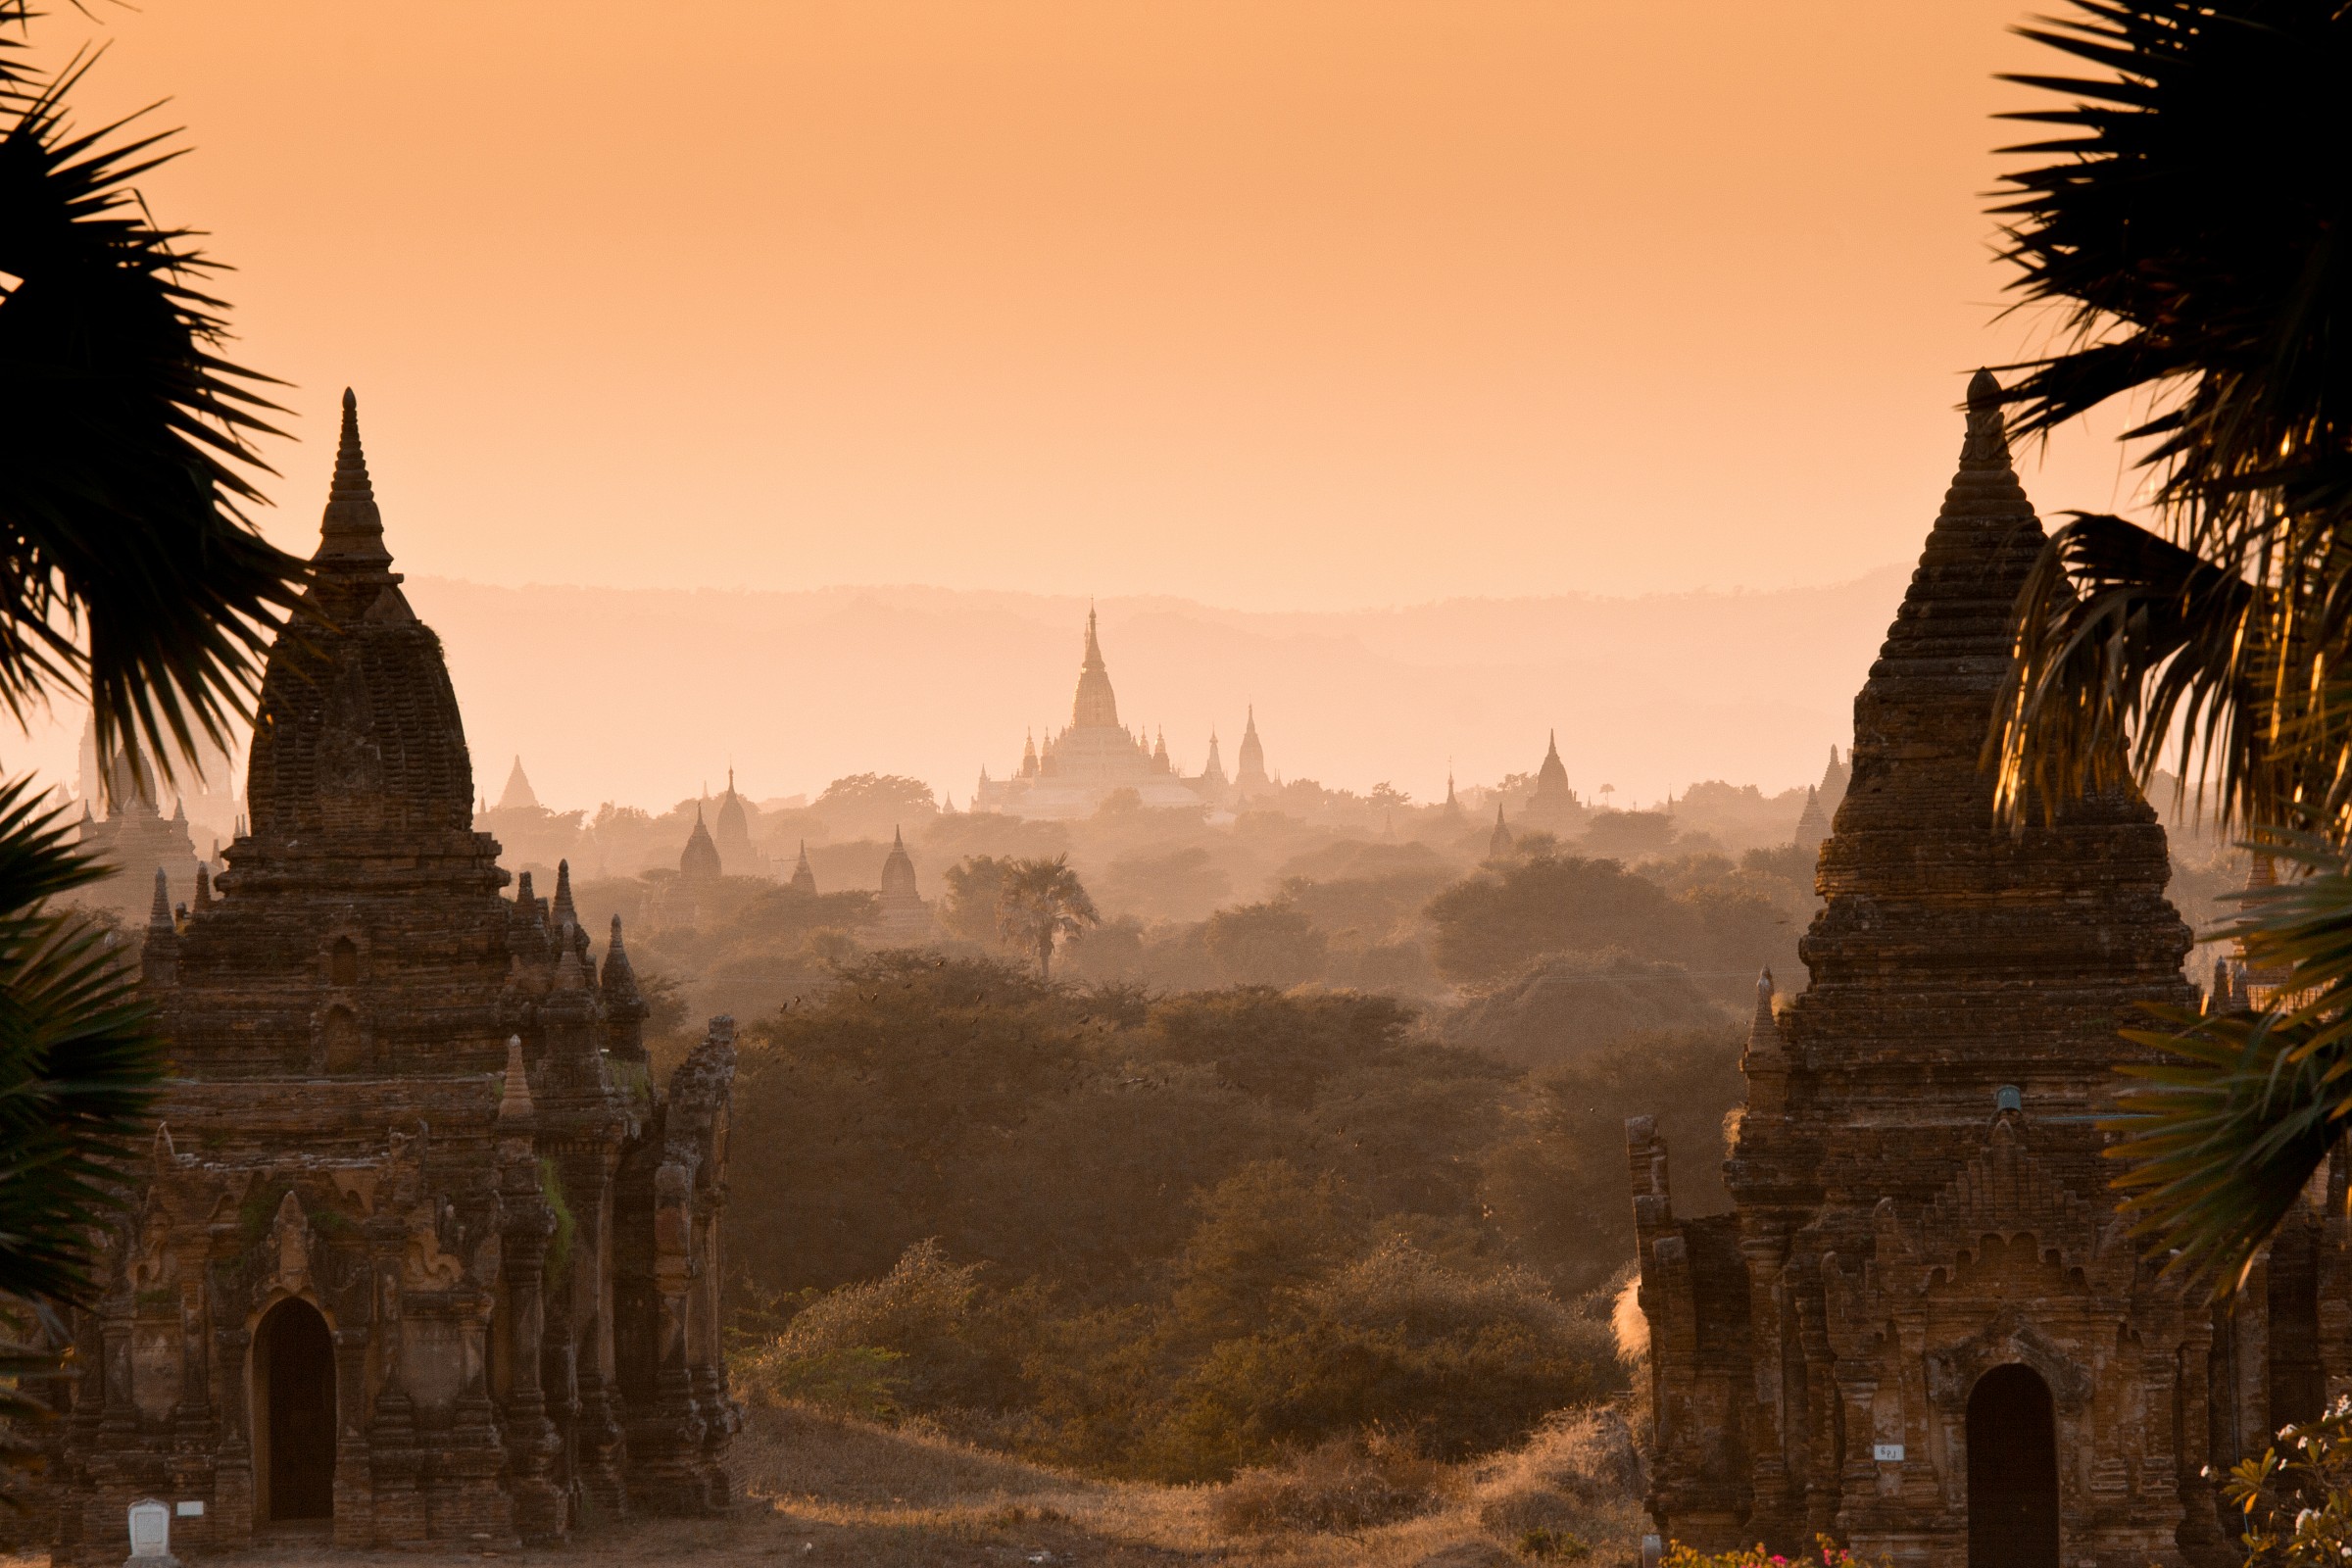 Bagan...